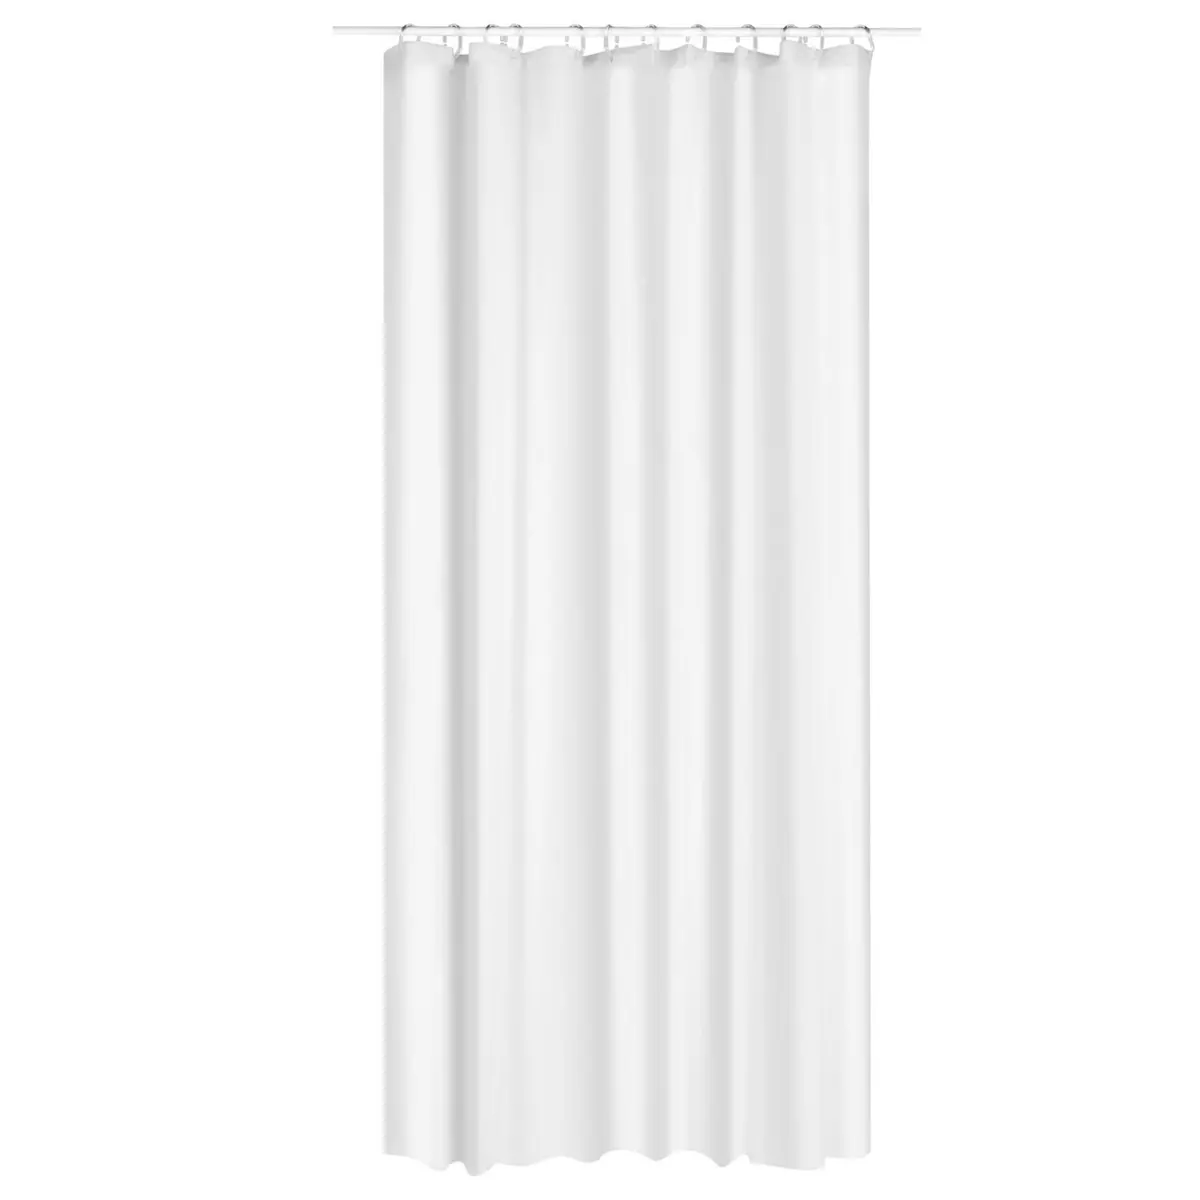 FIVE Rideau de douche Eva - 180 x 200 cm - Blanc